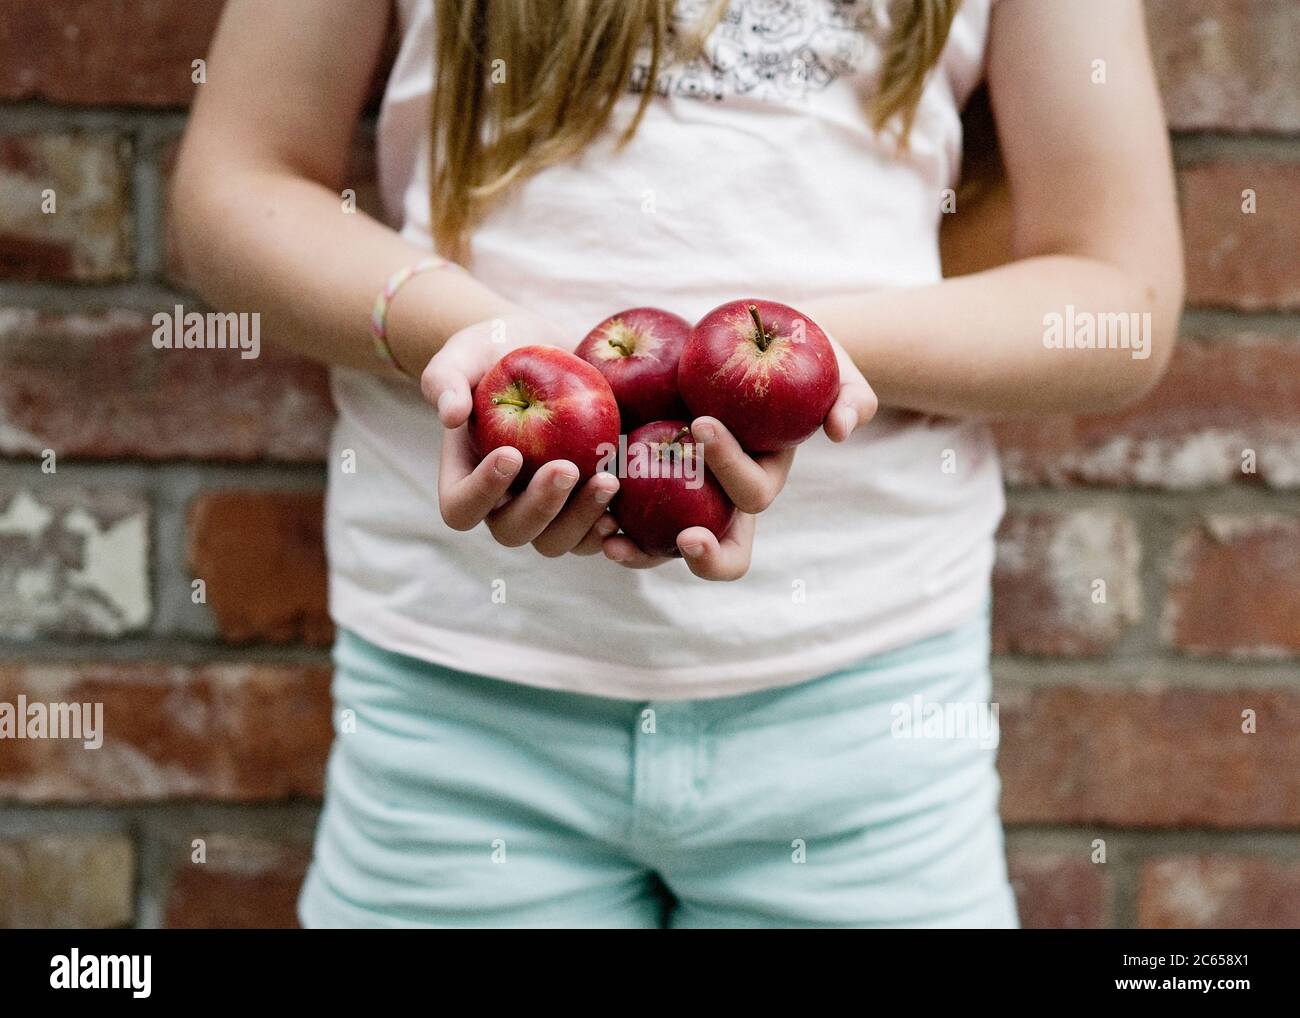 Un enfant tient quatre pommes rouges dans les paumes de ses mains à l'extérieur, dans un éclairage naturel devant un mur de briques. Banque D'Images